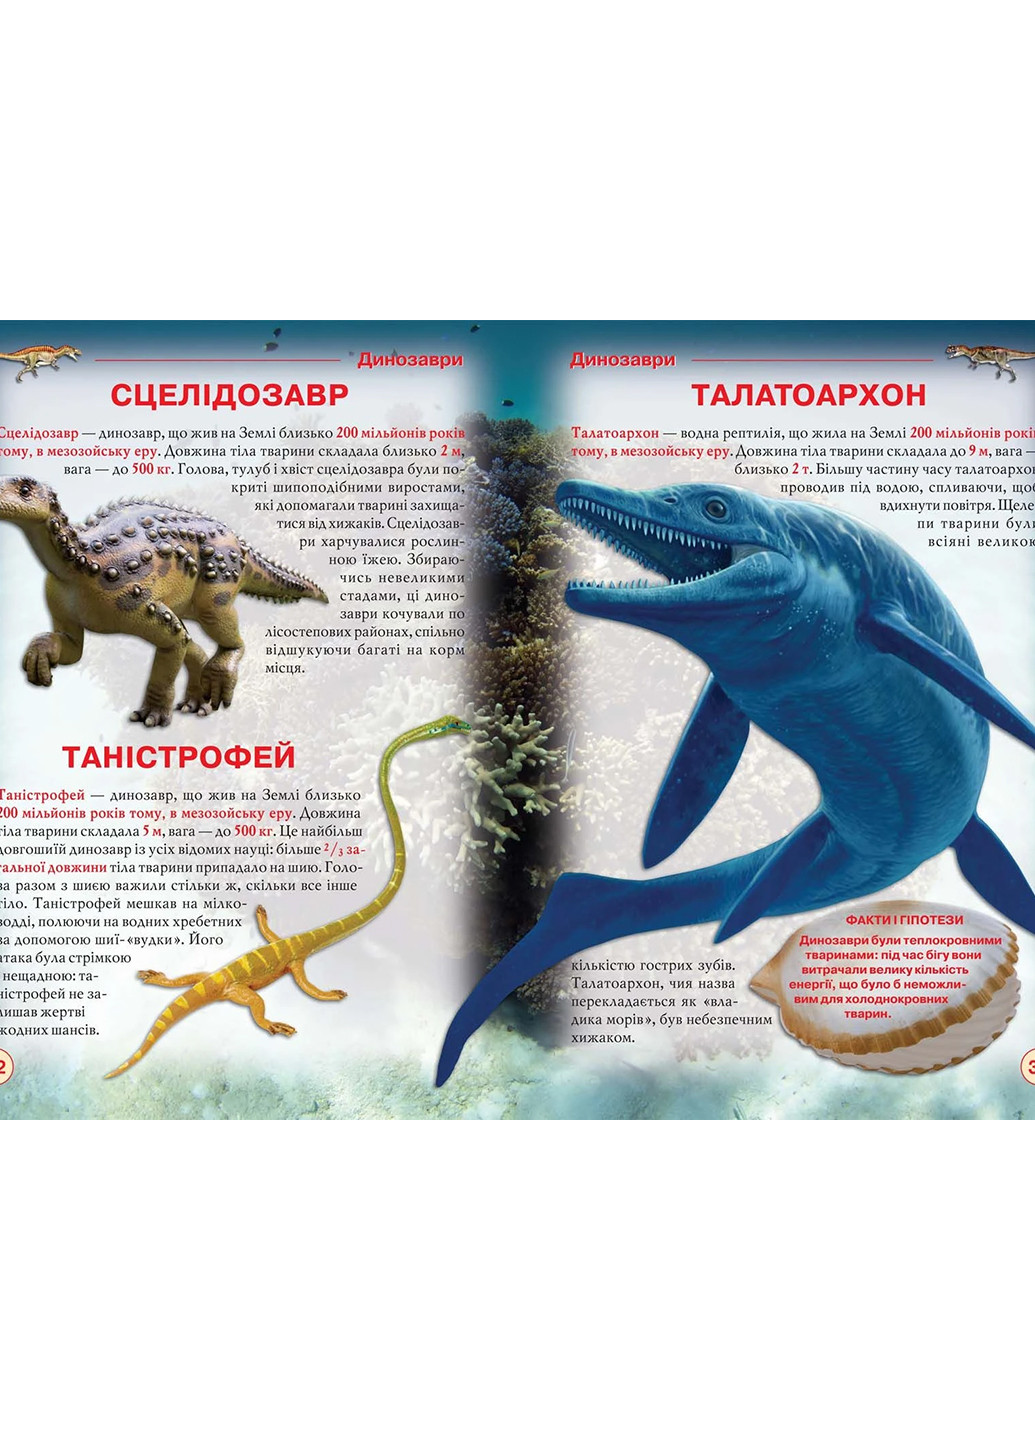 Книга Динозавры и другие древние животные 7957 Crystal Book (257038437)